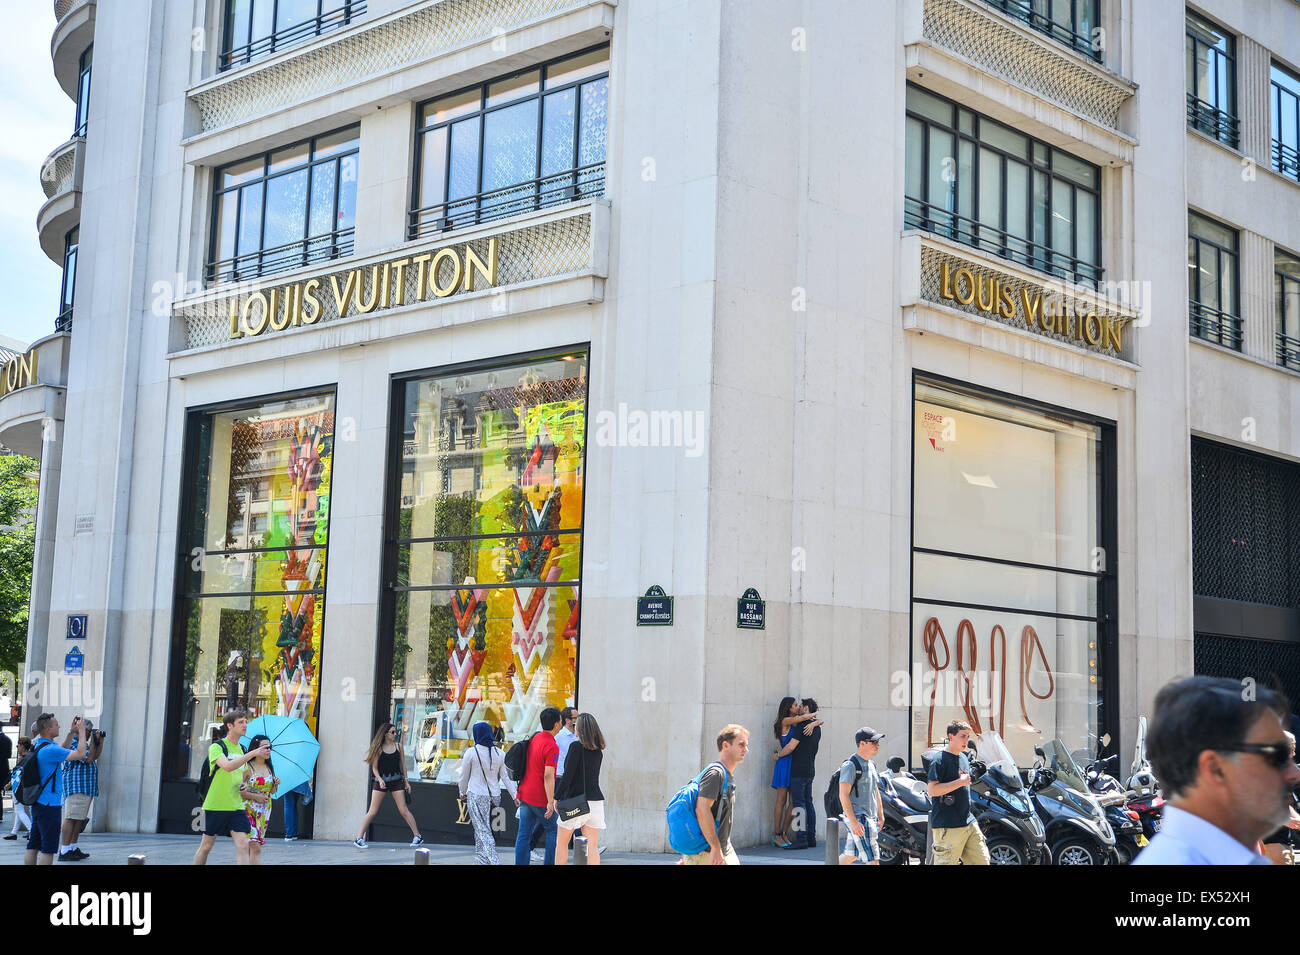 Louis Vuitton Paris Champs Ã‰lysÃ©es Editorial Stock Photo - Image